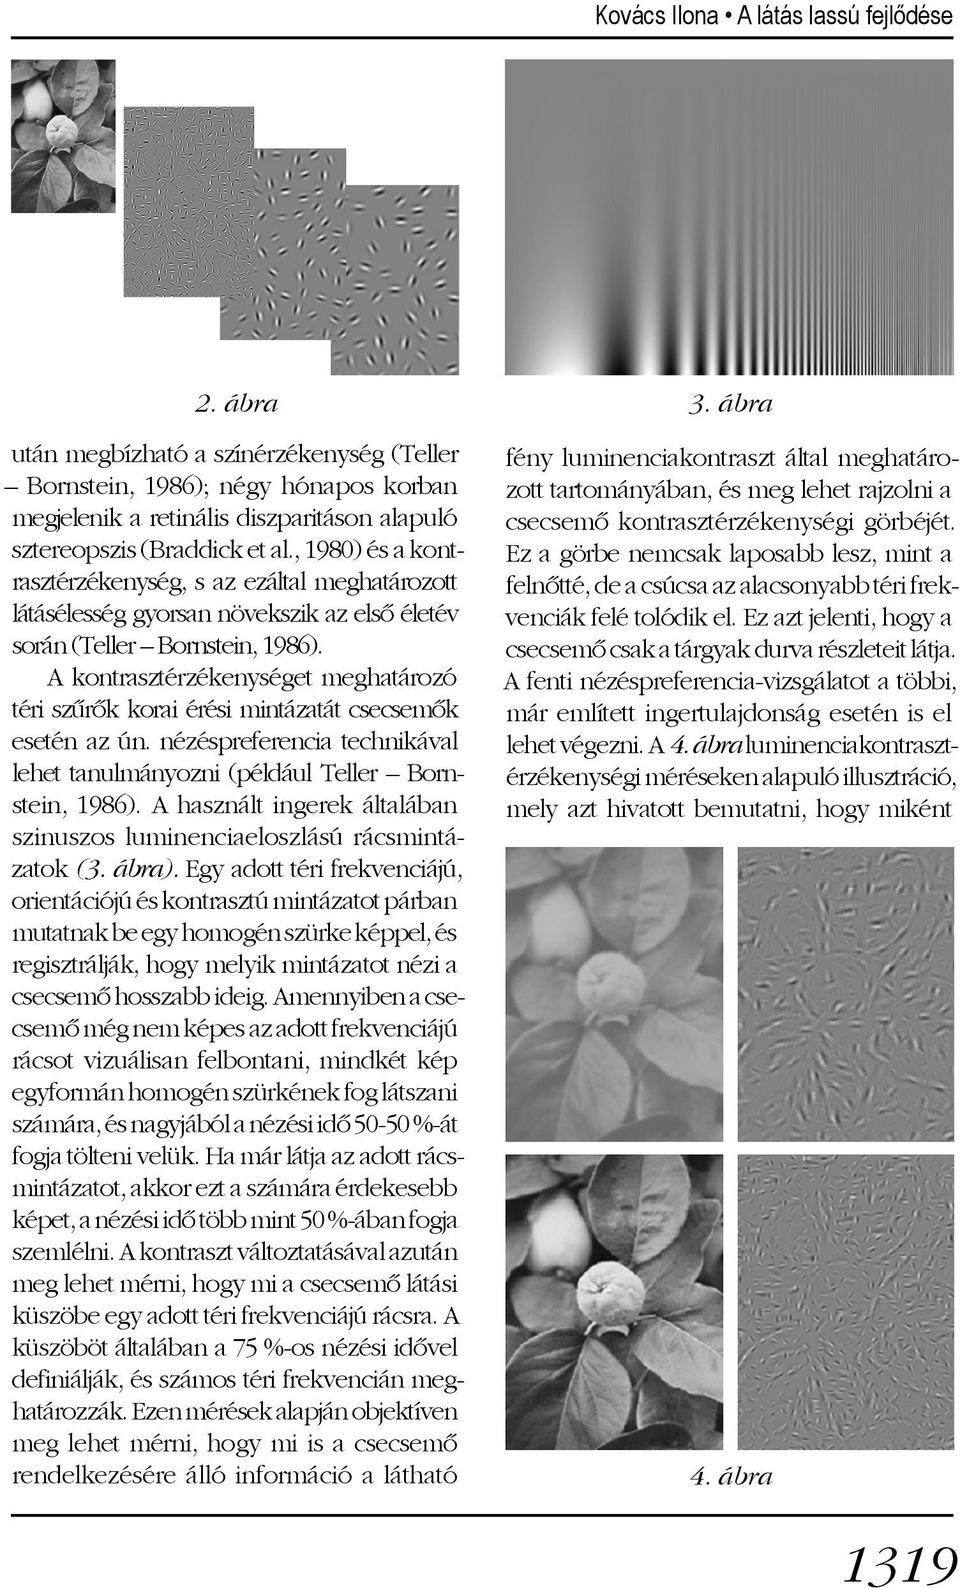 A kontrasztérzékenységet meghatározó téri szûrõk korai érési mintázatát csecsemõk esetén az ún. nézéspreferencia technikával lehet tanulmányozni (például Teller Bornstein, 1986).